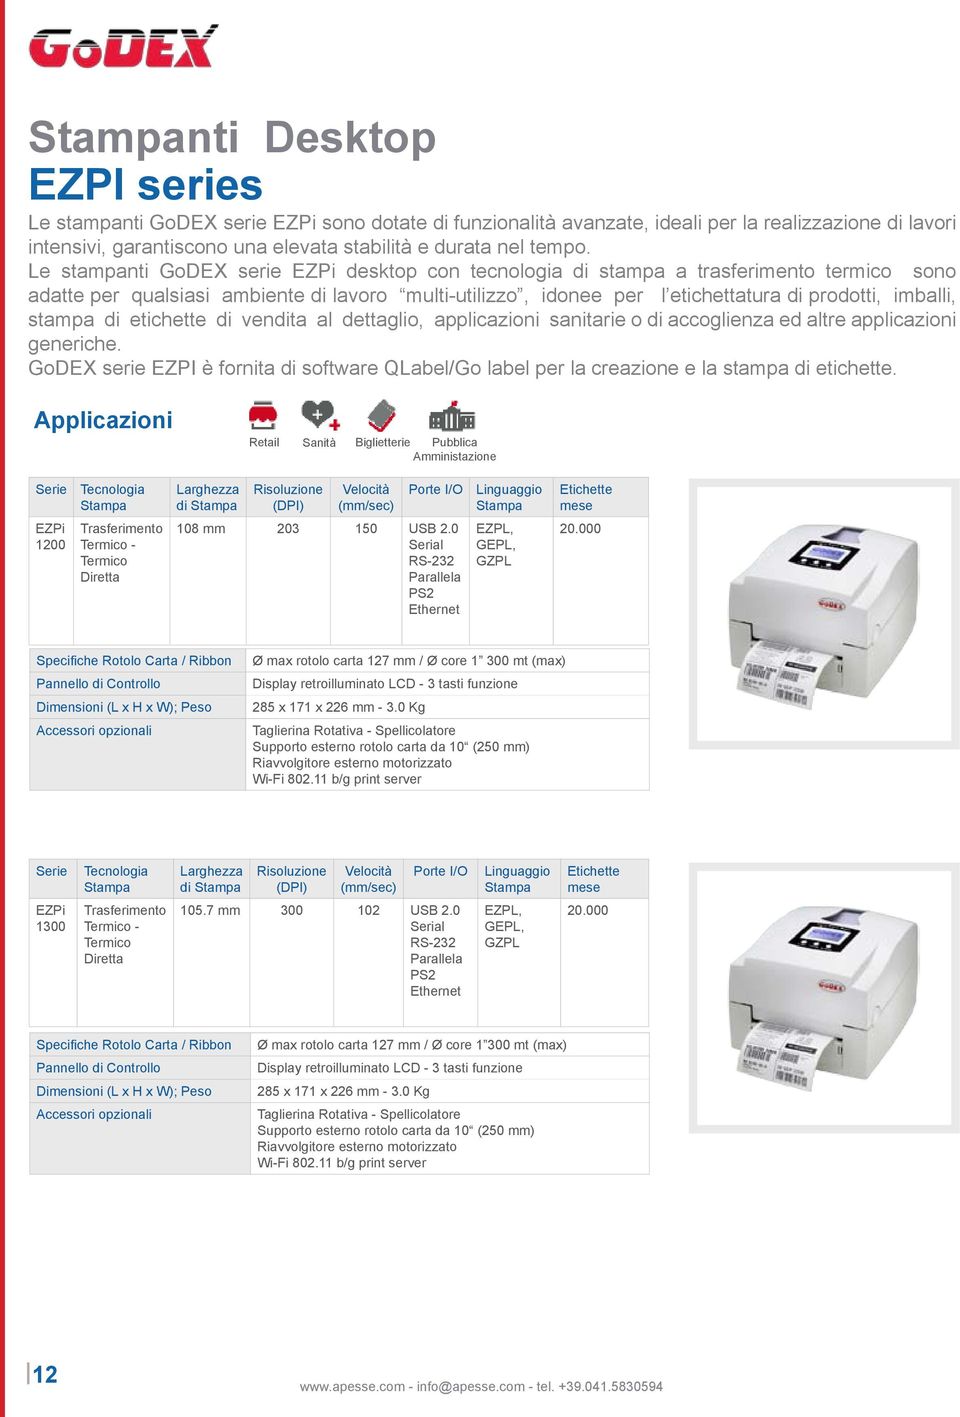 Le stampanti GoDEX serie EZPi desktop con tecnologia di stampa a trasferimento termico sono adatte per qualsiasi ambiente di lavoro multi-utilizzo, idonee per l etichettatura di prodotti, imballi,